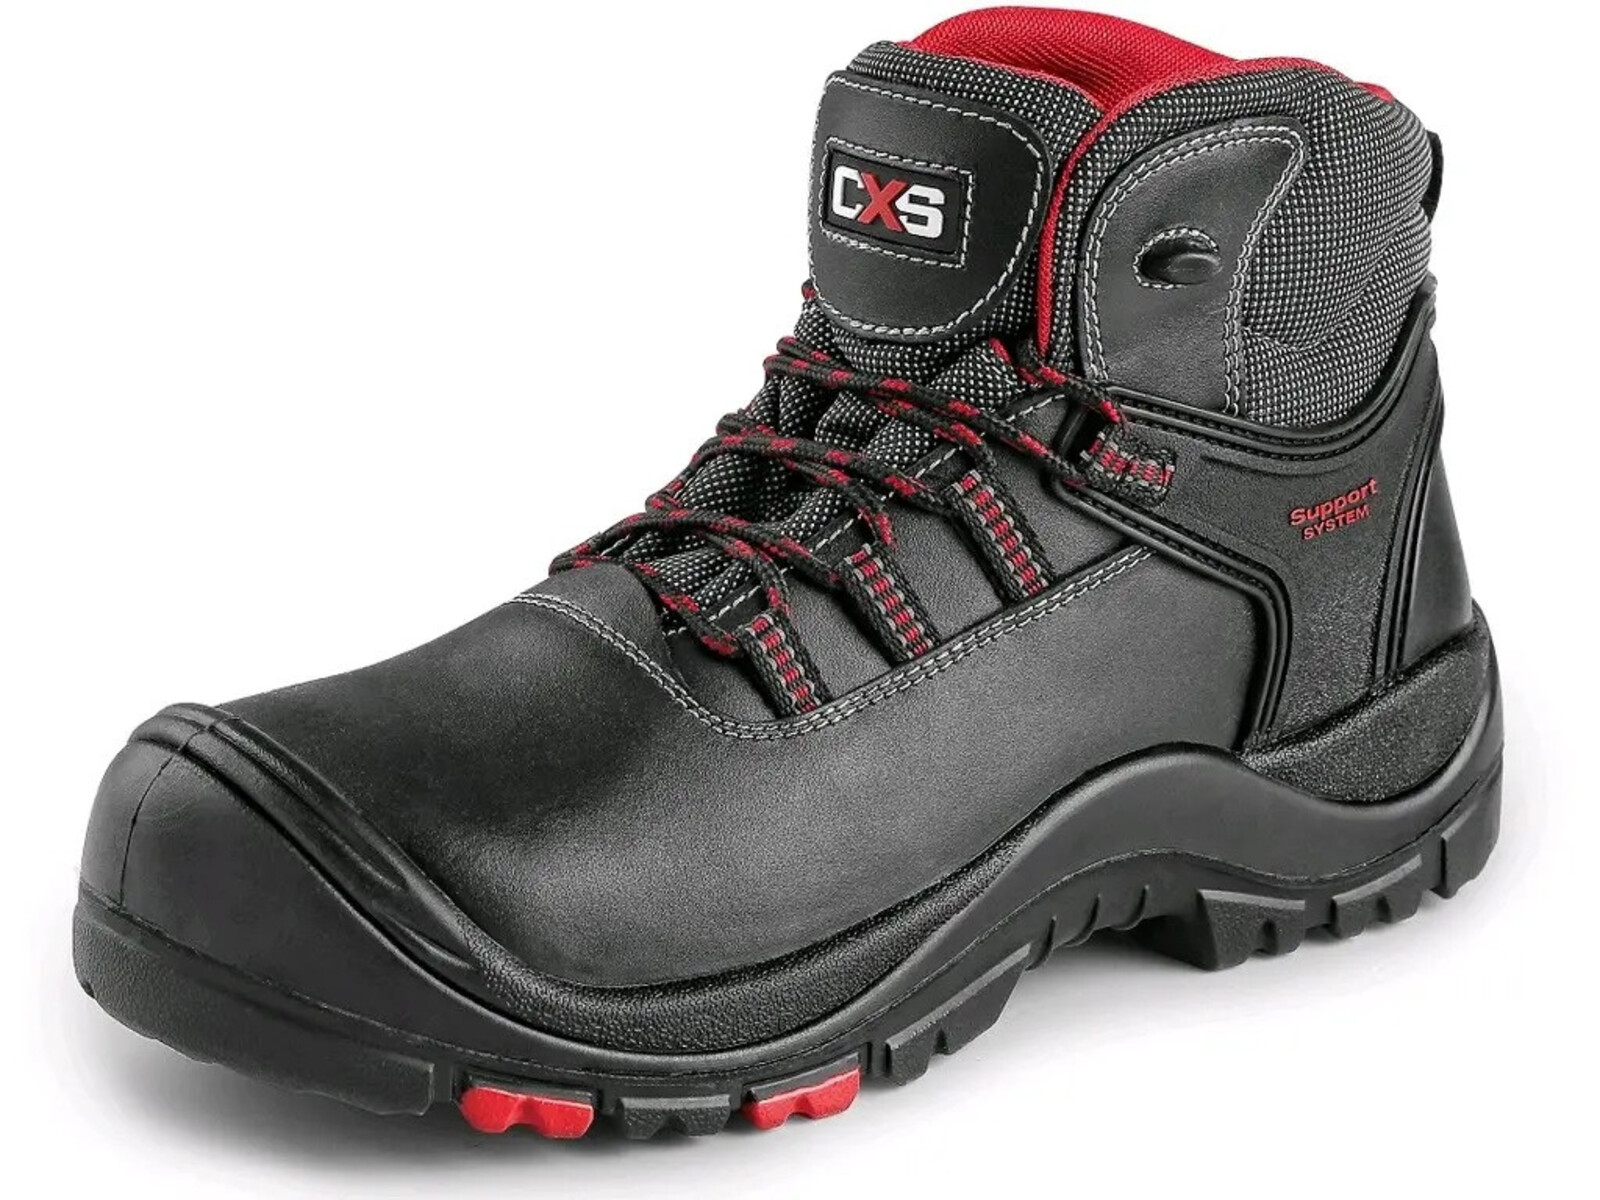 Bezpečnostná členková obuv CXS Rock Granite S3 SRC HRO MF - veľkosť: 36, farba: čierna/červená